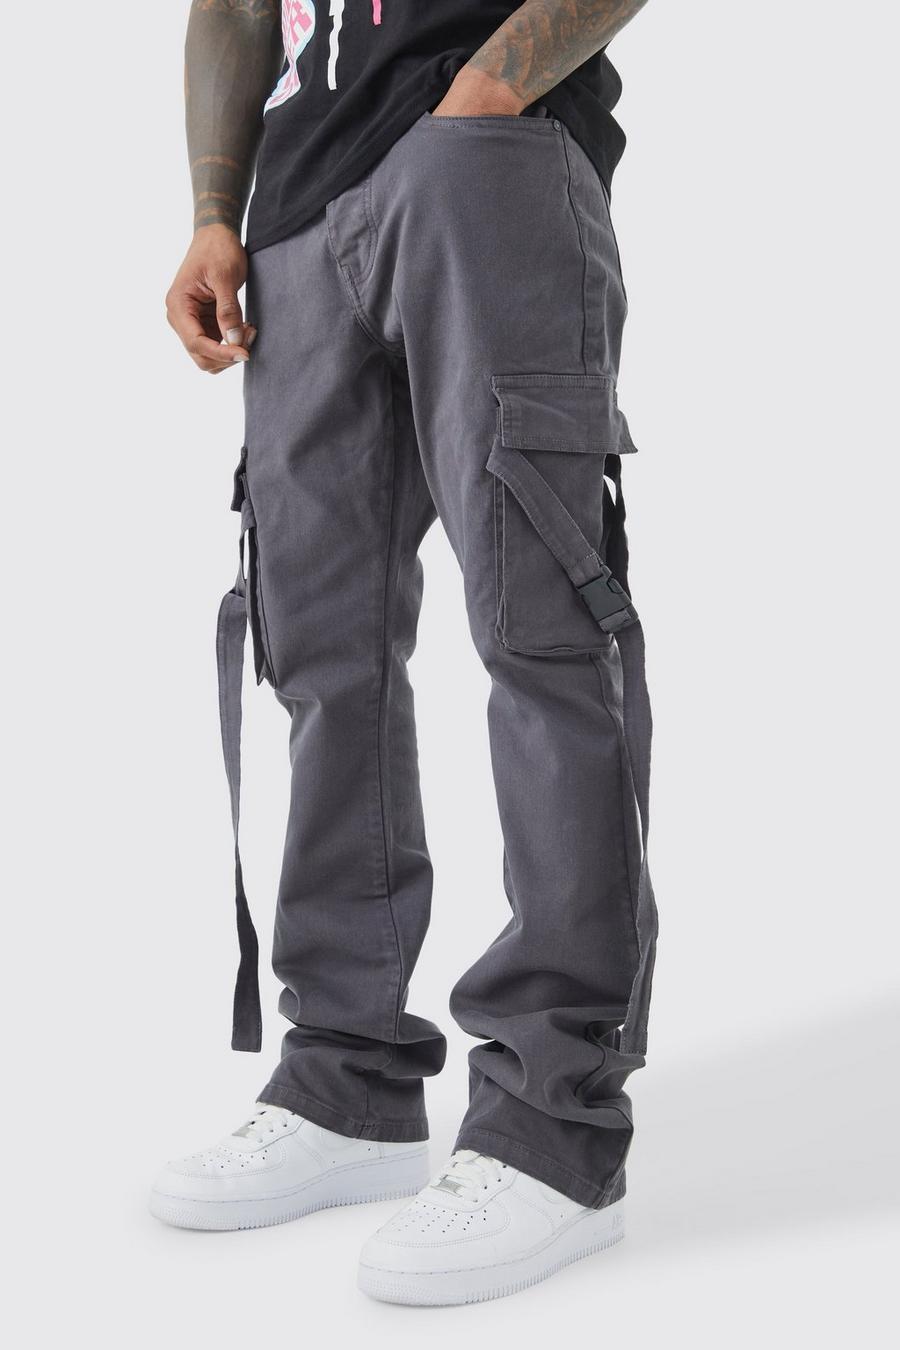 Pantaloni Cargo Slim Fit con vita fissa, pieghe sul fondo e spalline svasate, Charcoal